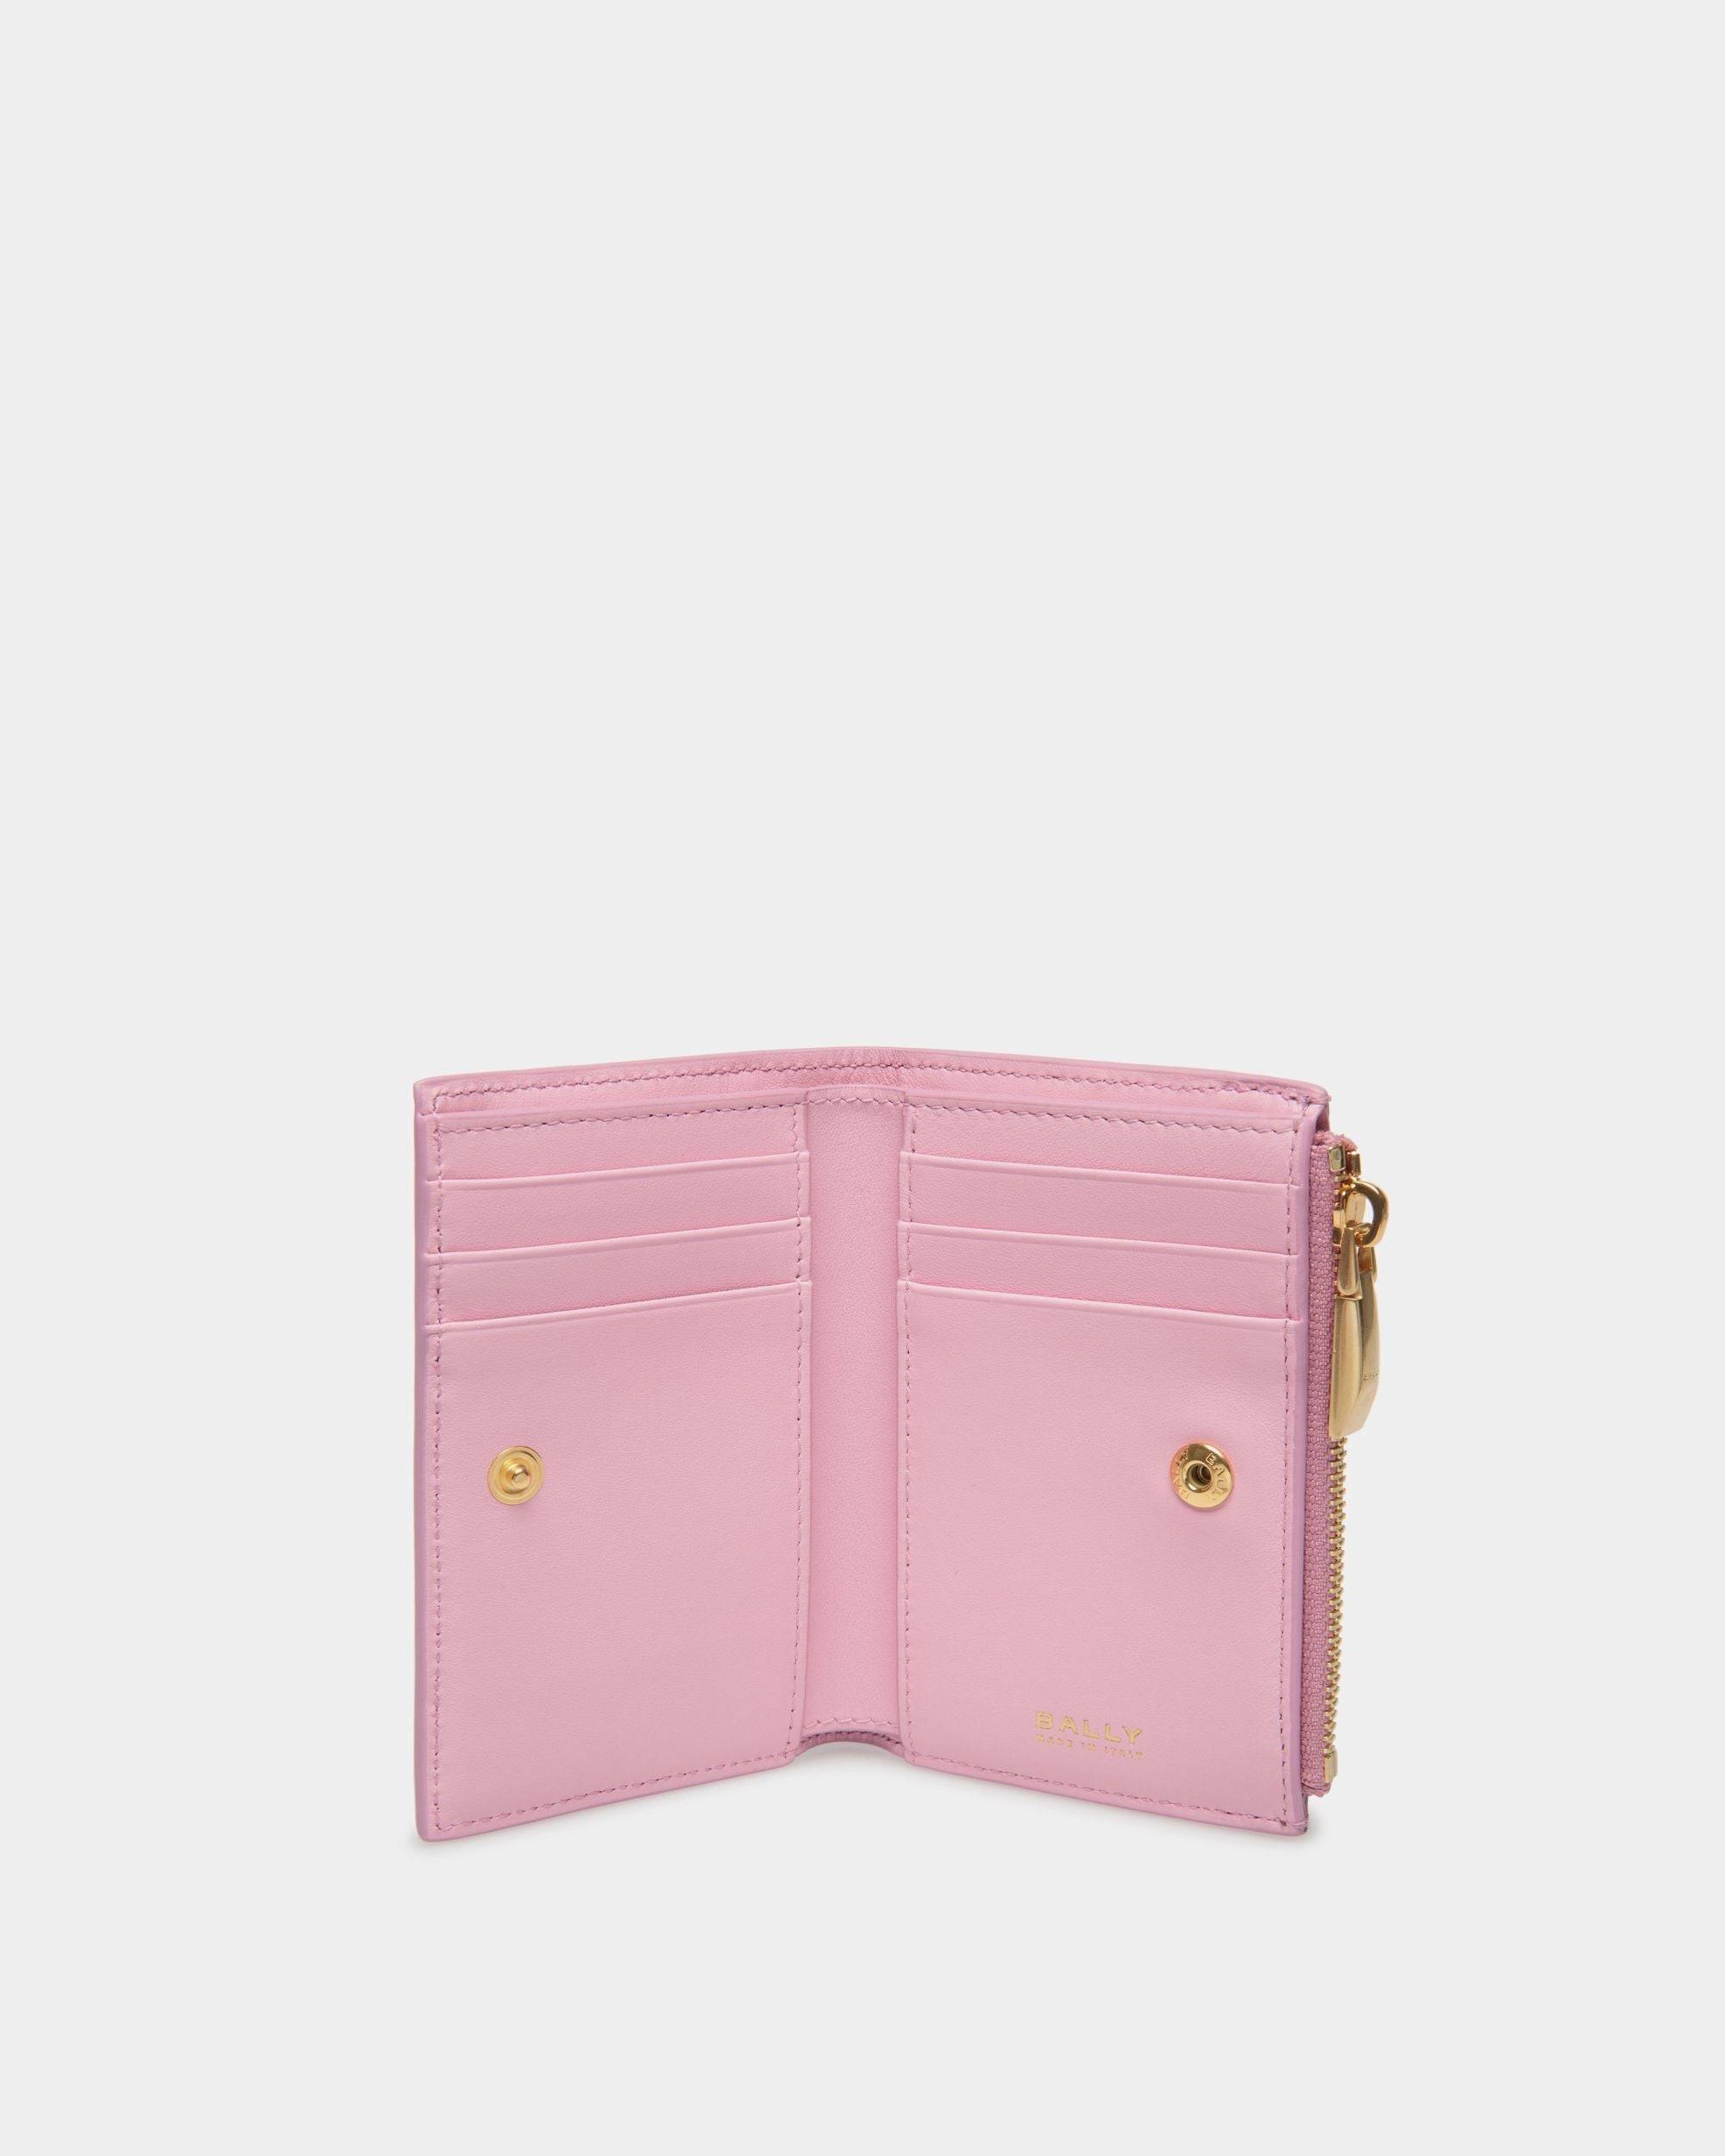 Bally Spell | Women's Wallet in Pink Leather | Bally | Still Life Open / Inside